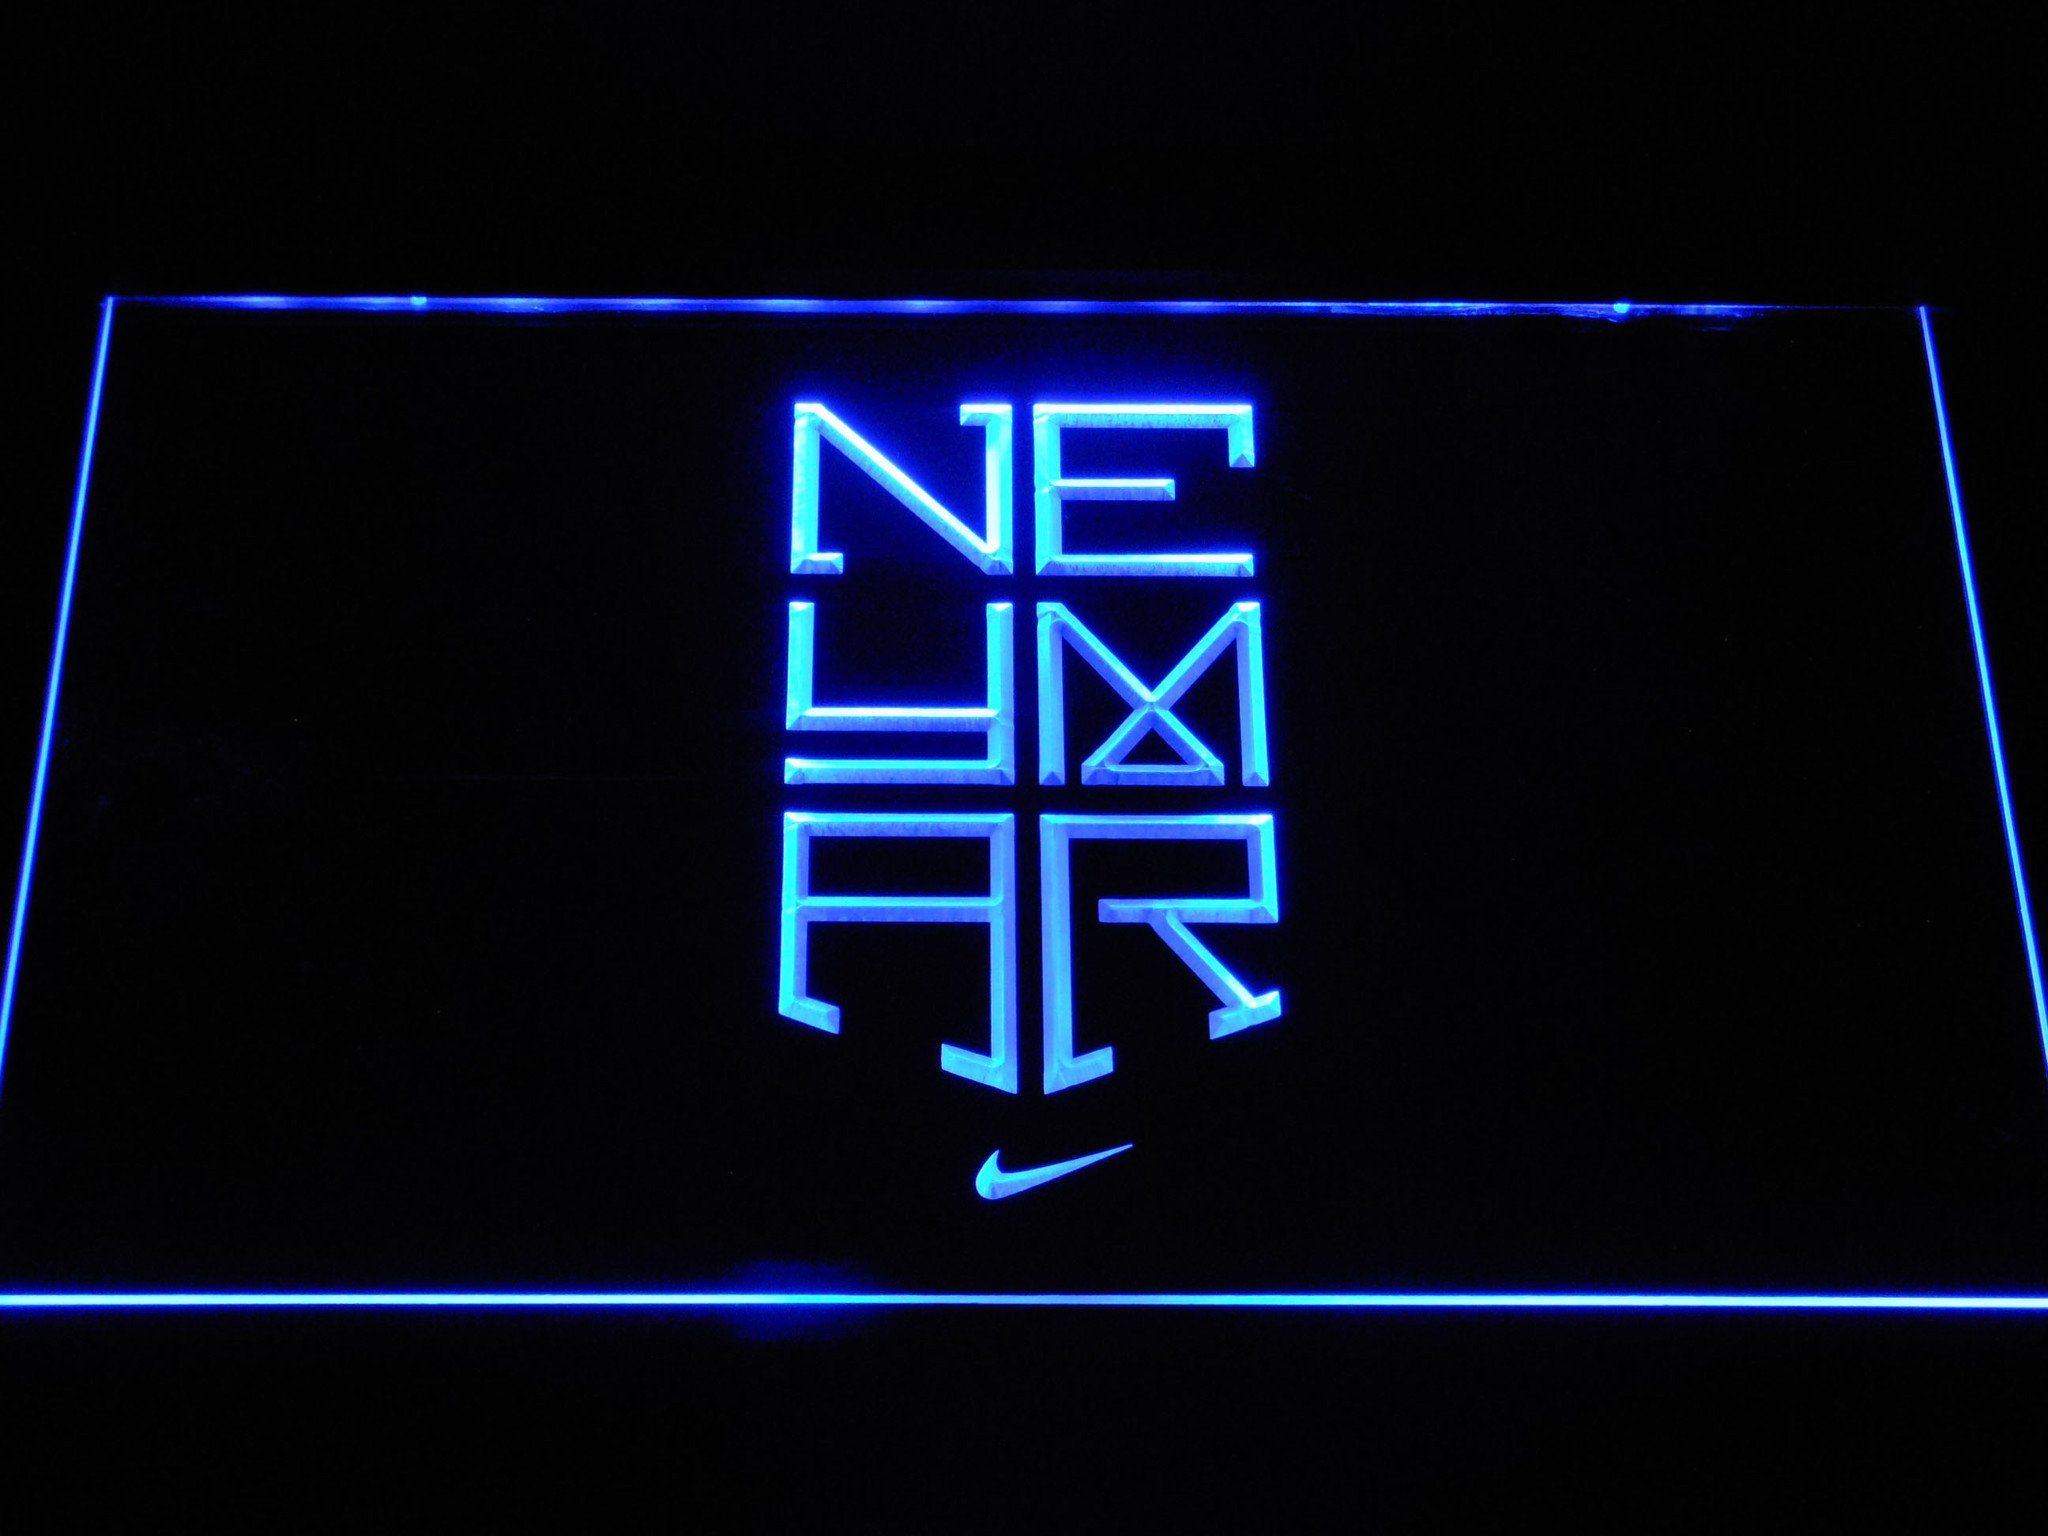 NJR Letter Logo Design on BLACK Background. NJR Creative Initials Letter  Logo Concept Stock Illustration - Illustration of emblem, logo: 245086088